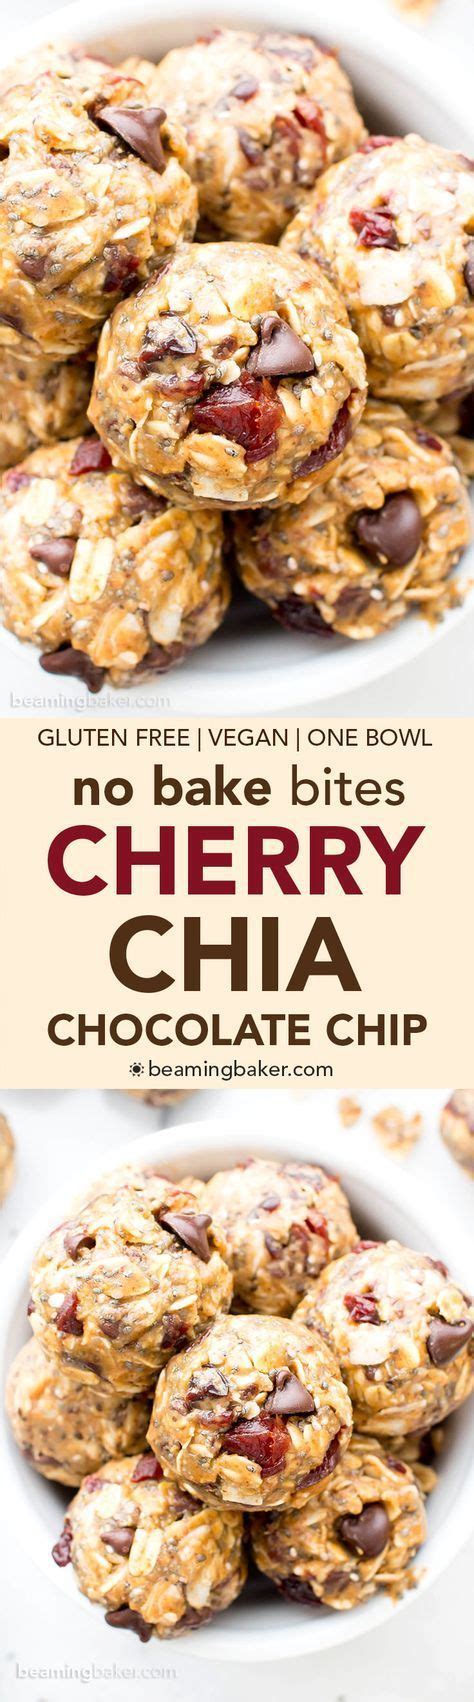 no bake cherry chocolate chip chia energy bites vegan gluten free dairy free one bowl